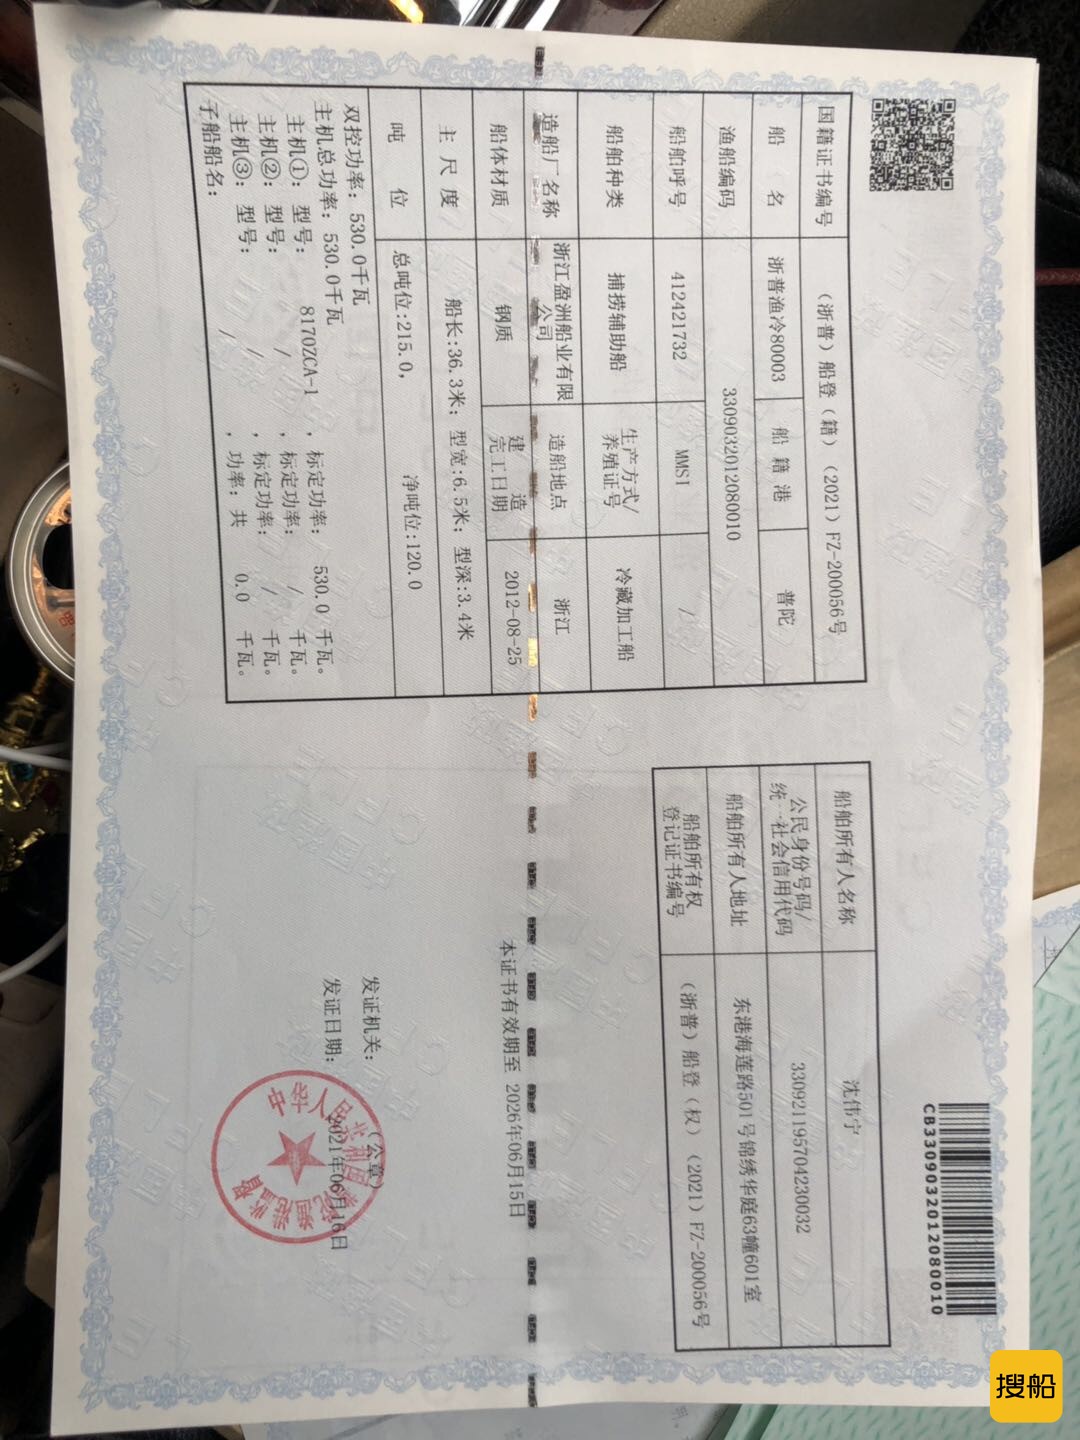 渔业帮助热躲减工船  北京-2.jpg